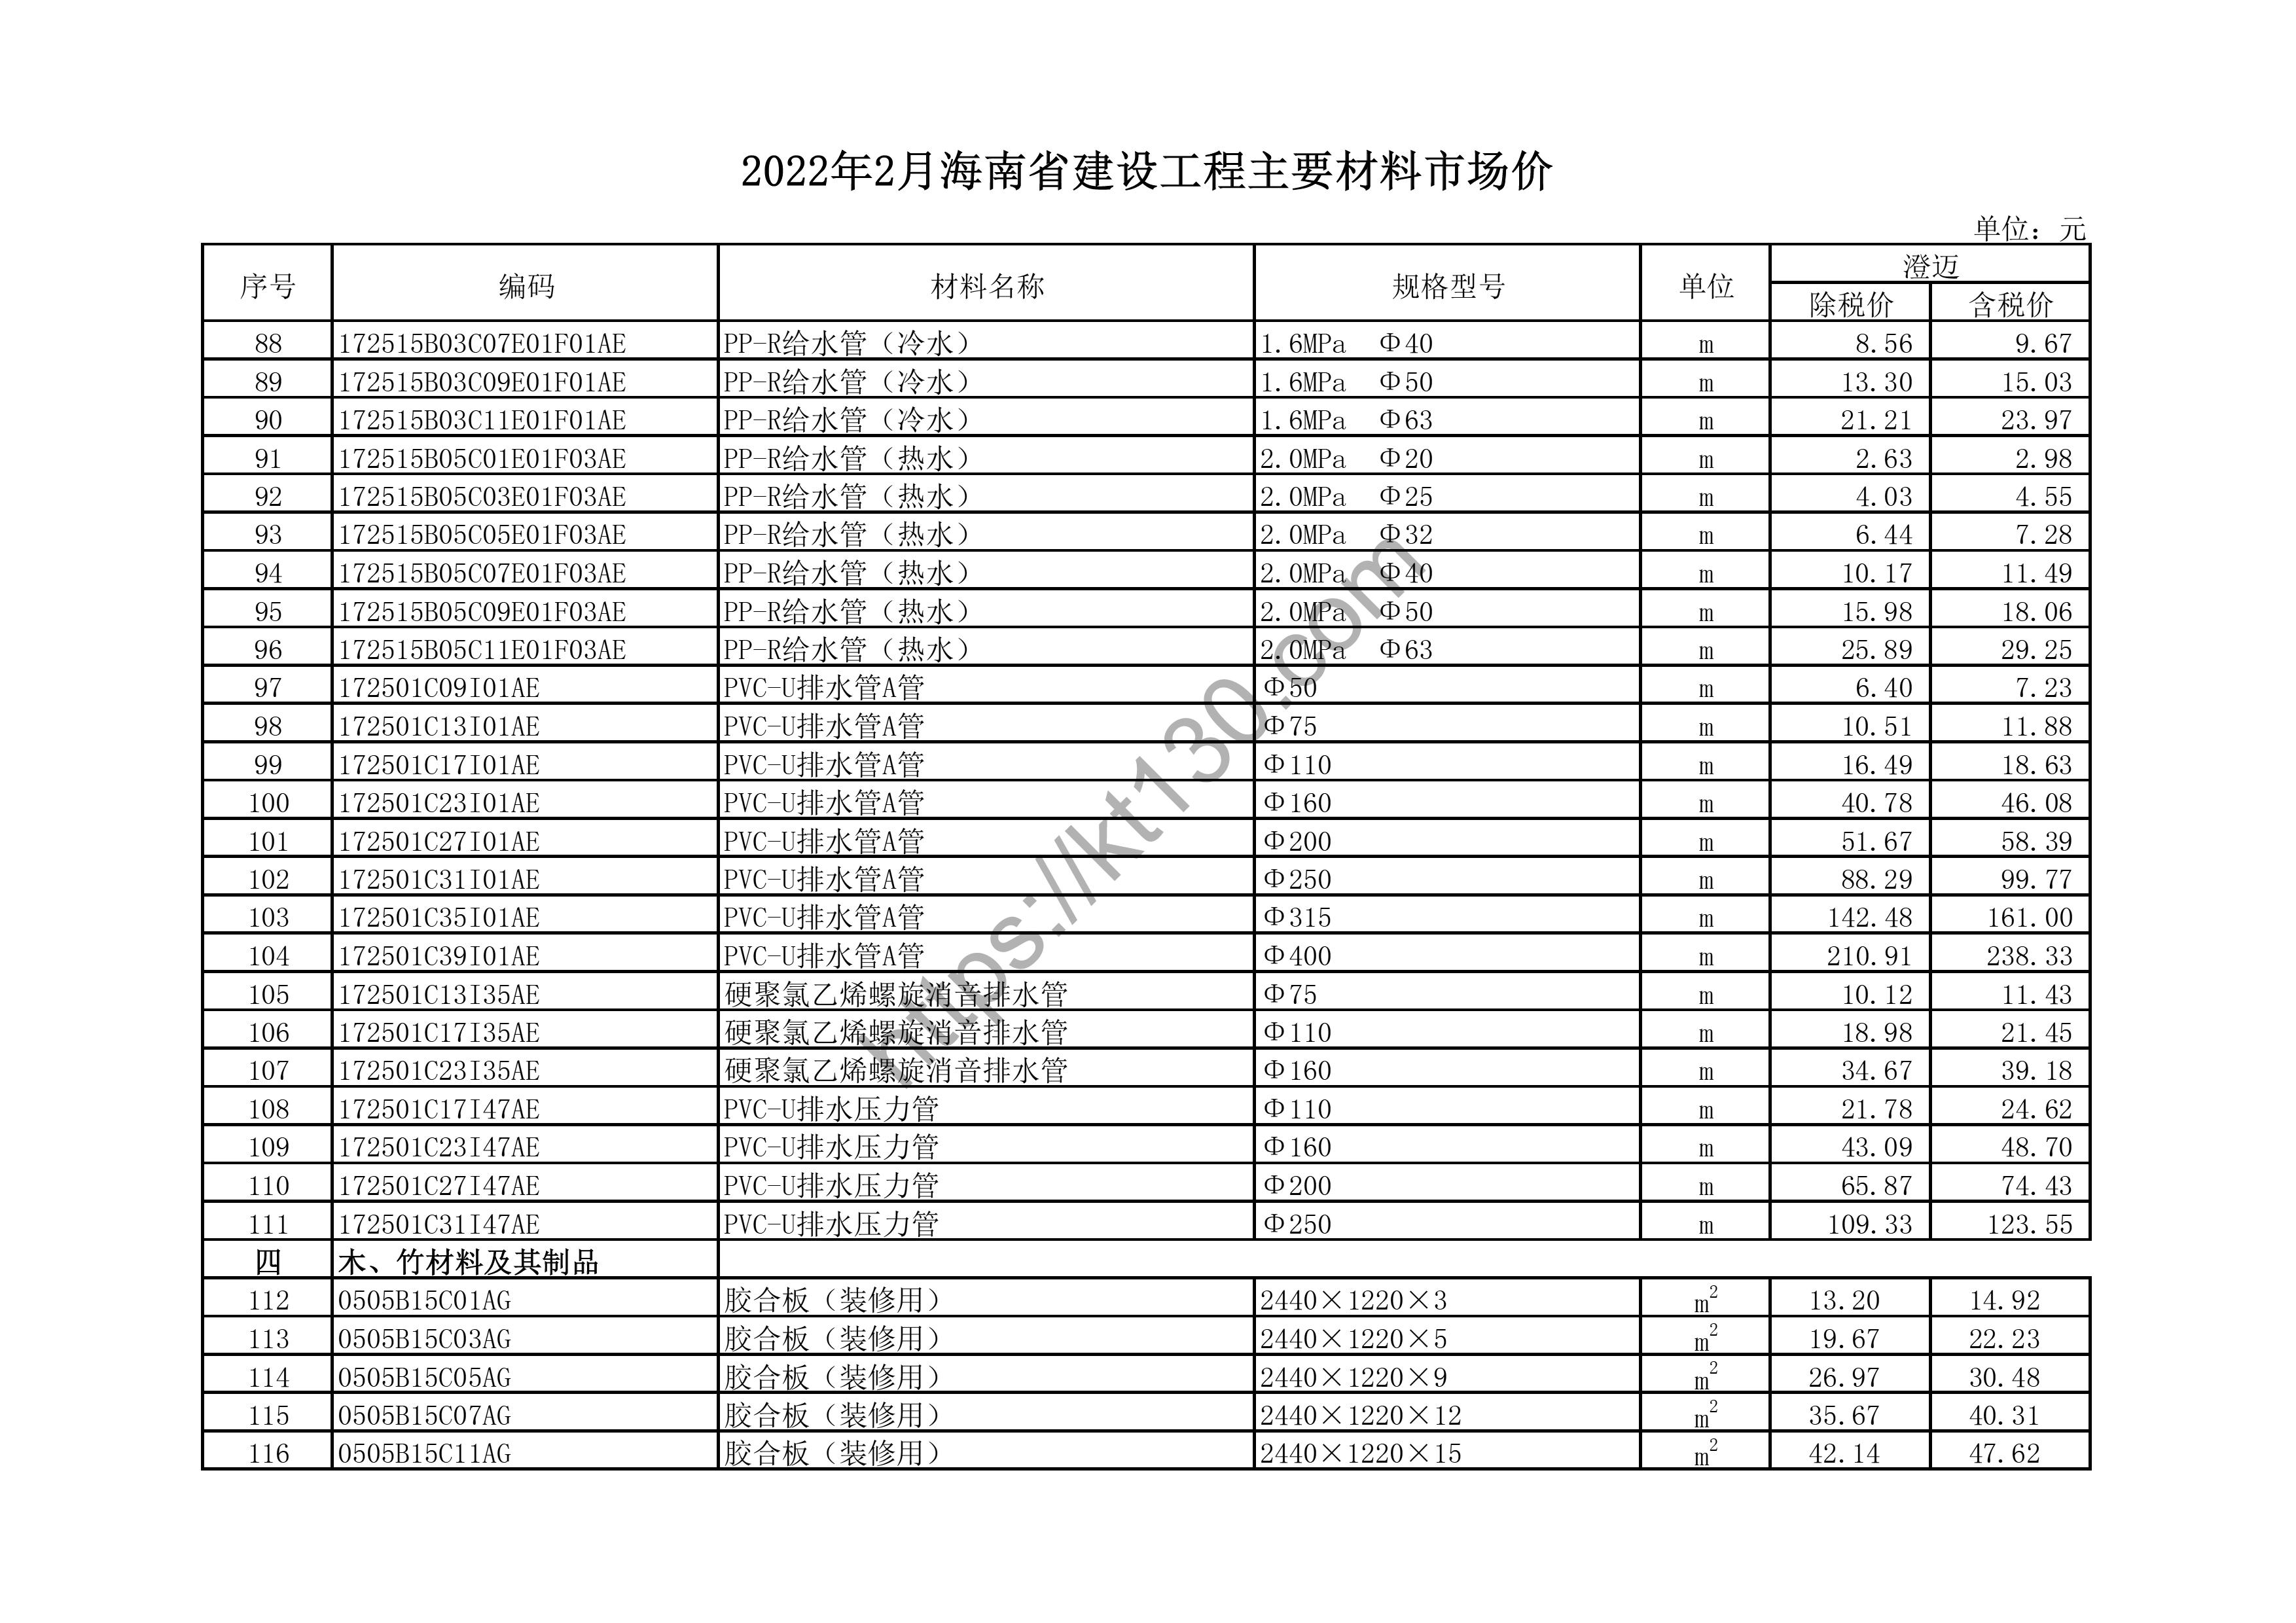 海南省2022年2月建筑材料价_带肋钢筋_43824